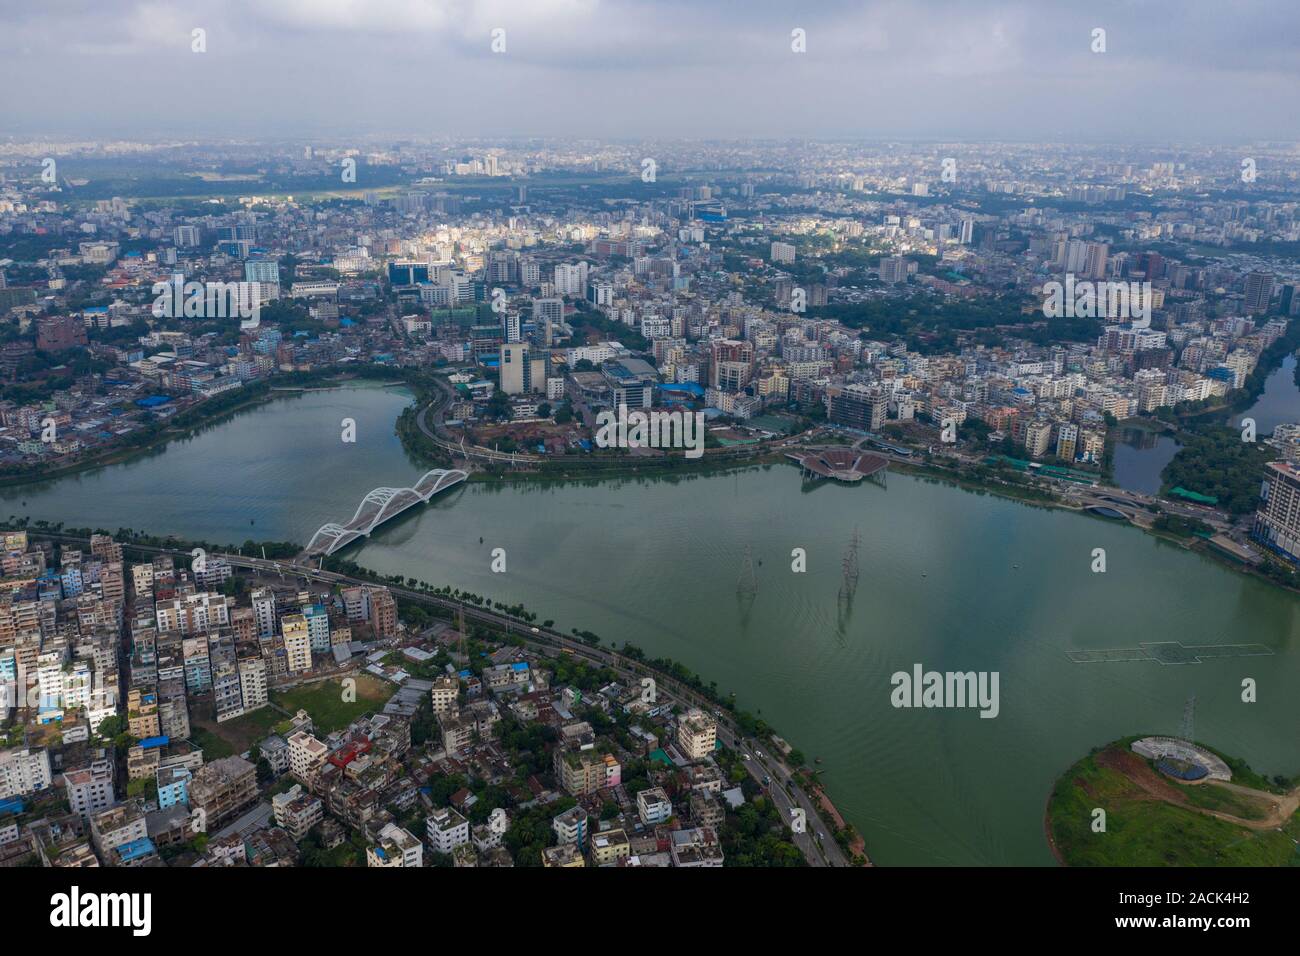 Vue aérienne de Dhaka, la capitale du Bangladesh. Banque D'Images